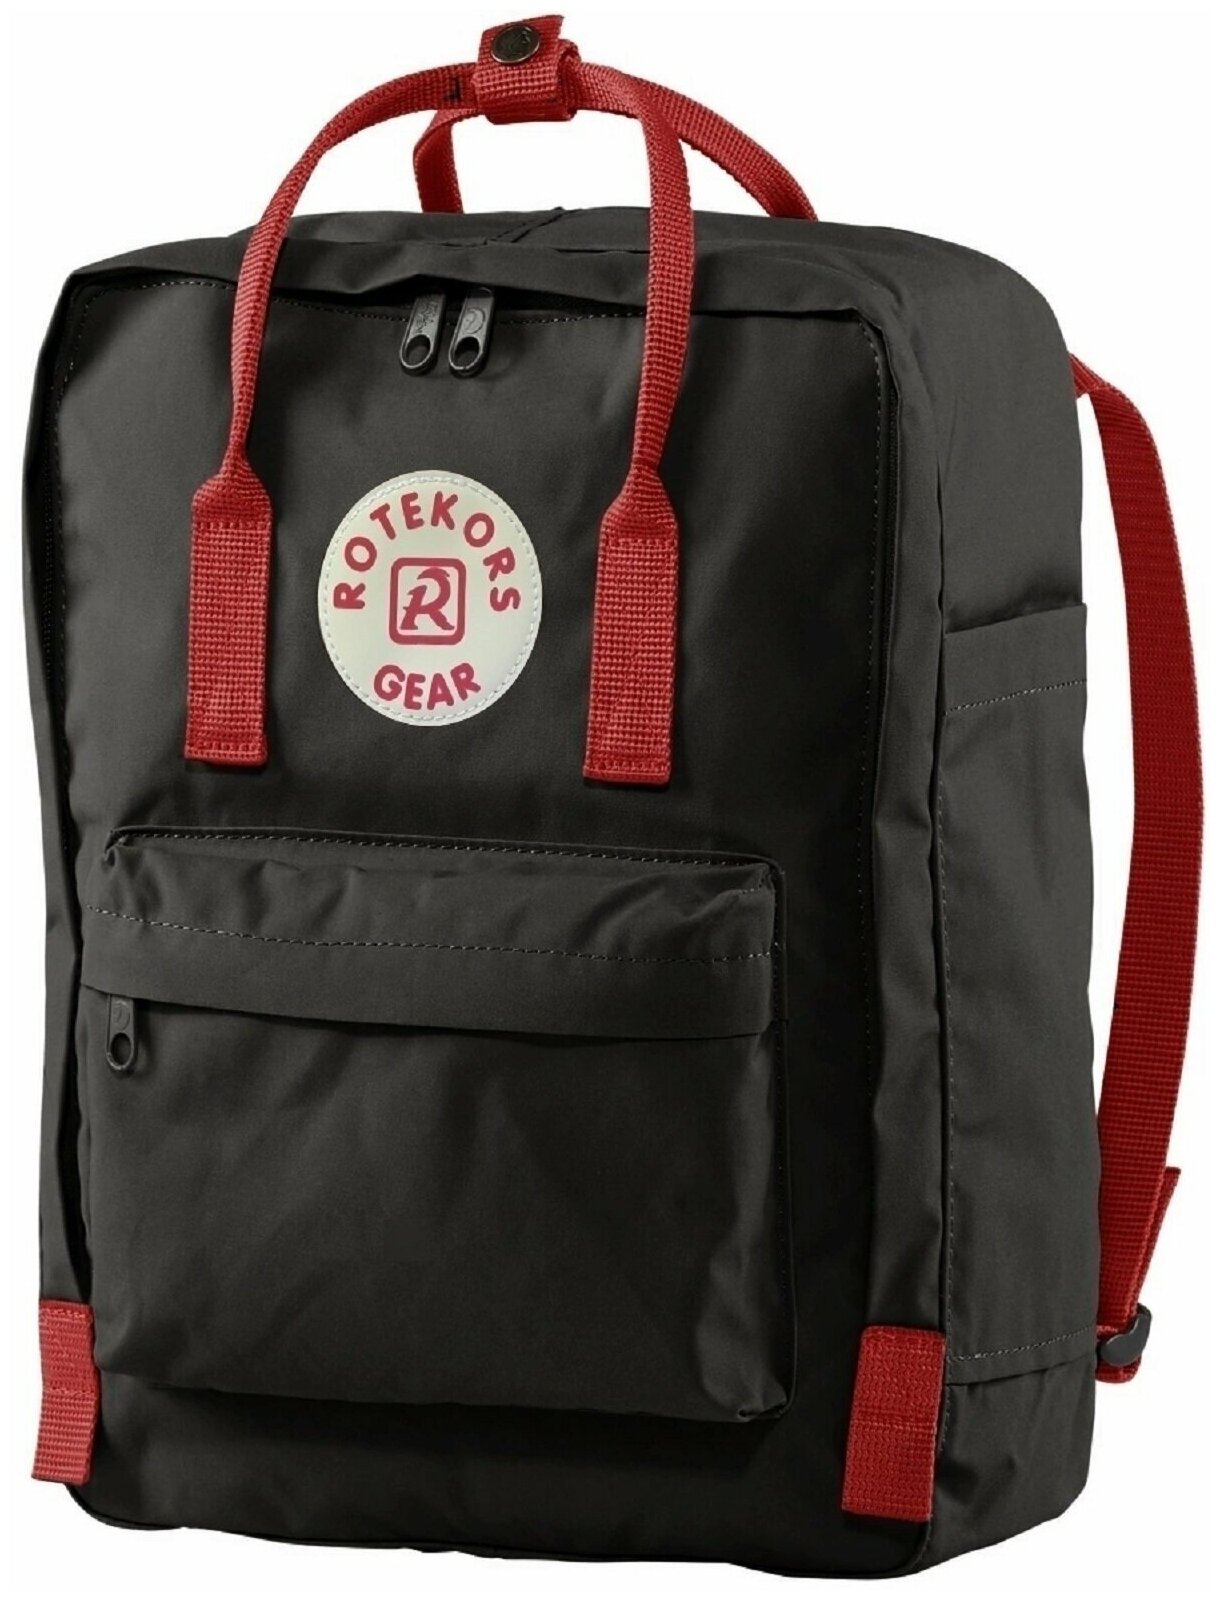 Рюкзак женский мужской унисекс - сумка для школы Rittlekors Gear Чёрный